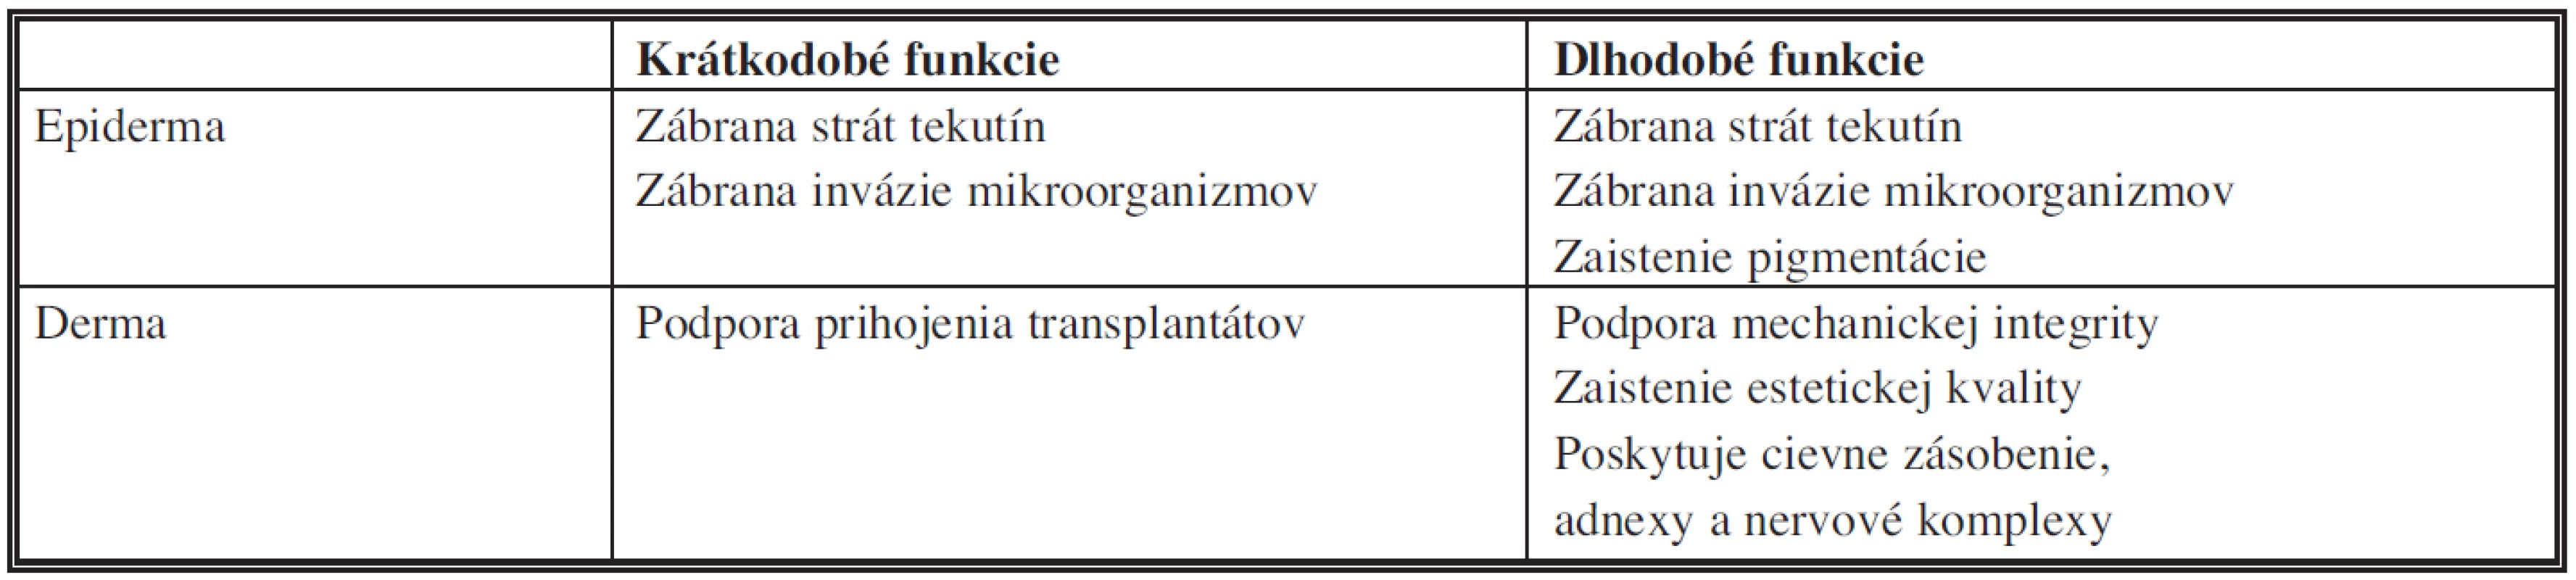 Vybrané funkcie kože zabezpečované epidermou a dermou &lt;i&gt;(modifikované podľa Tompkinsa, 1996)&lt;/i&gt;